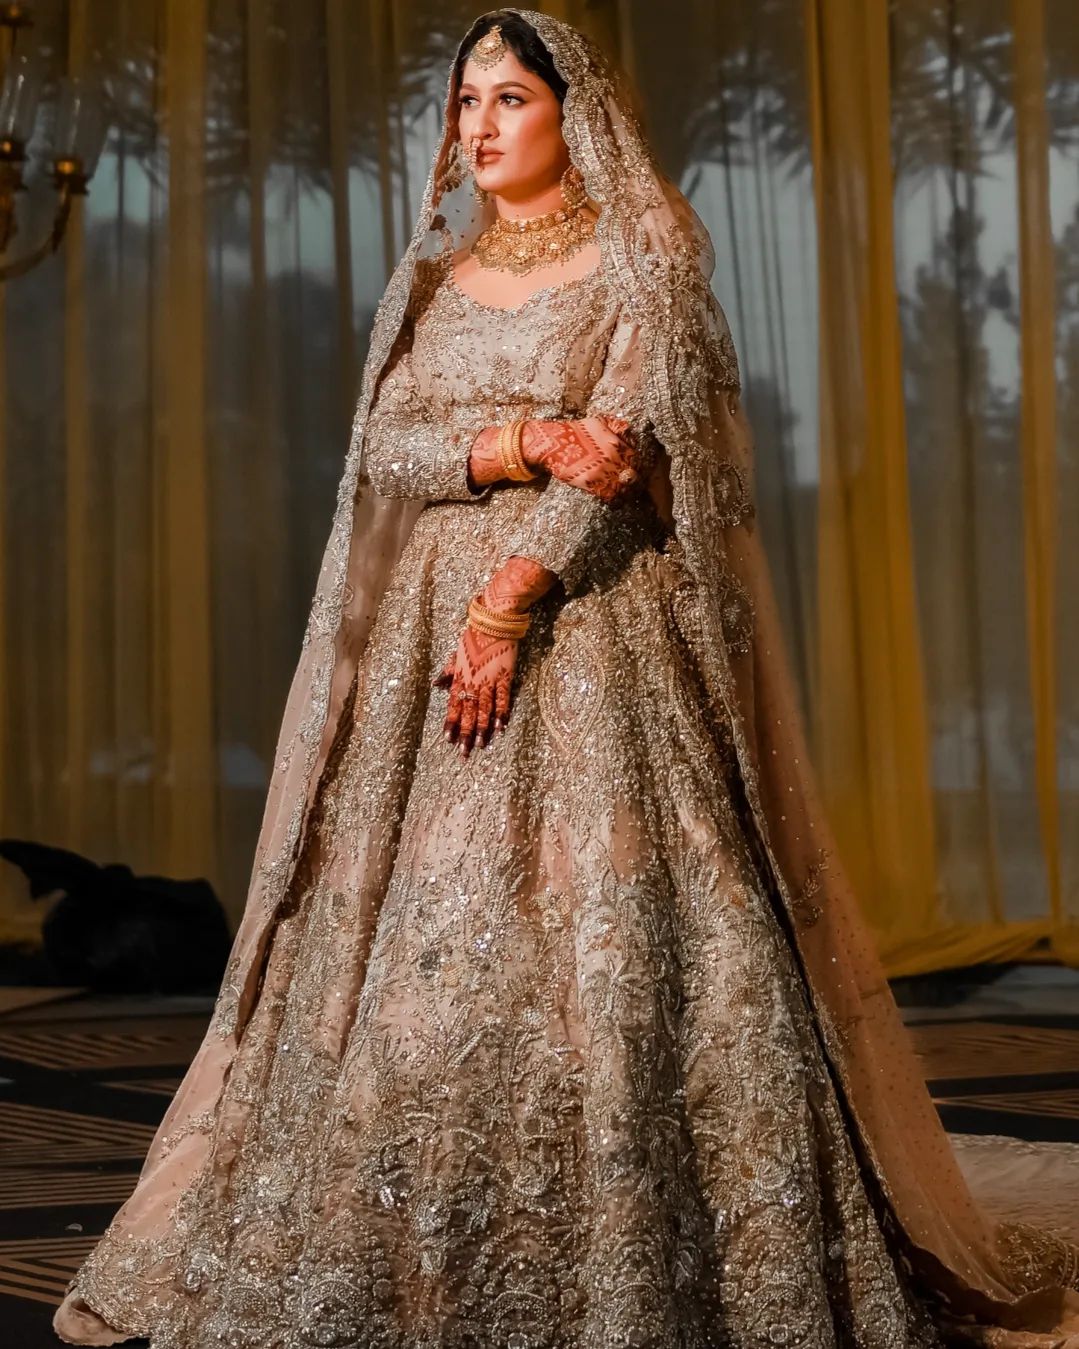 White Bridal Saree With Trail Wedding Dress Wedding Lehenga Latest Indian  Fashion Lehenga,indian Pakistan Wedding Lehe, Bridesmaid - Etsy Sweden